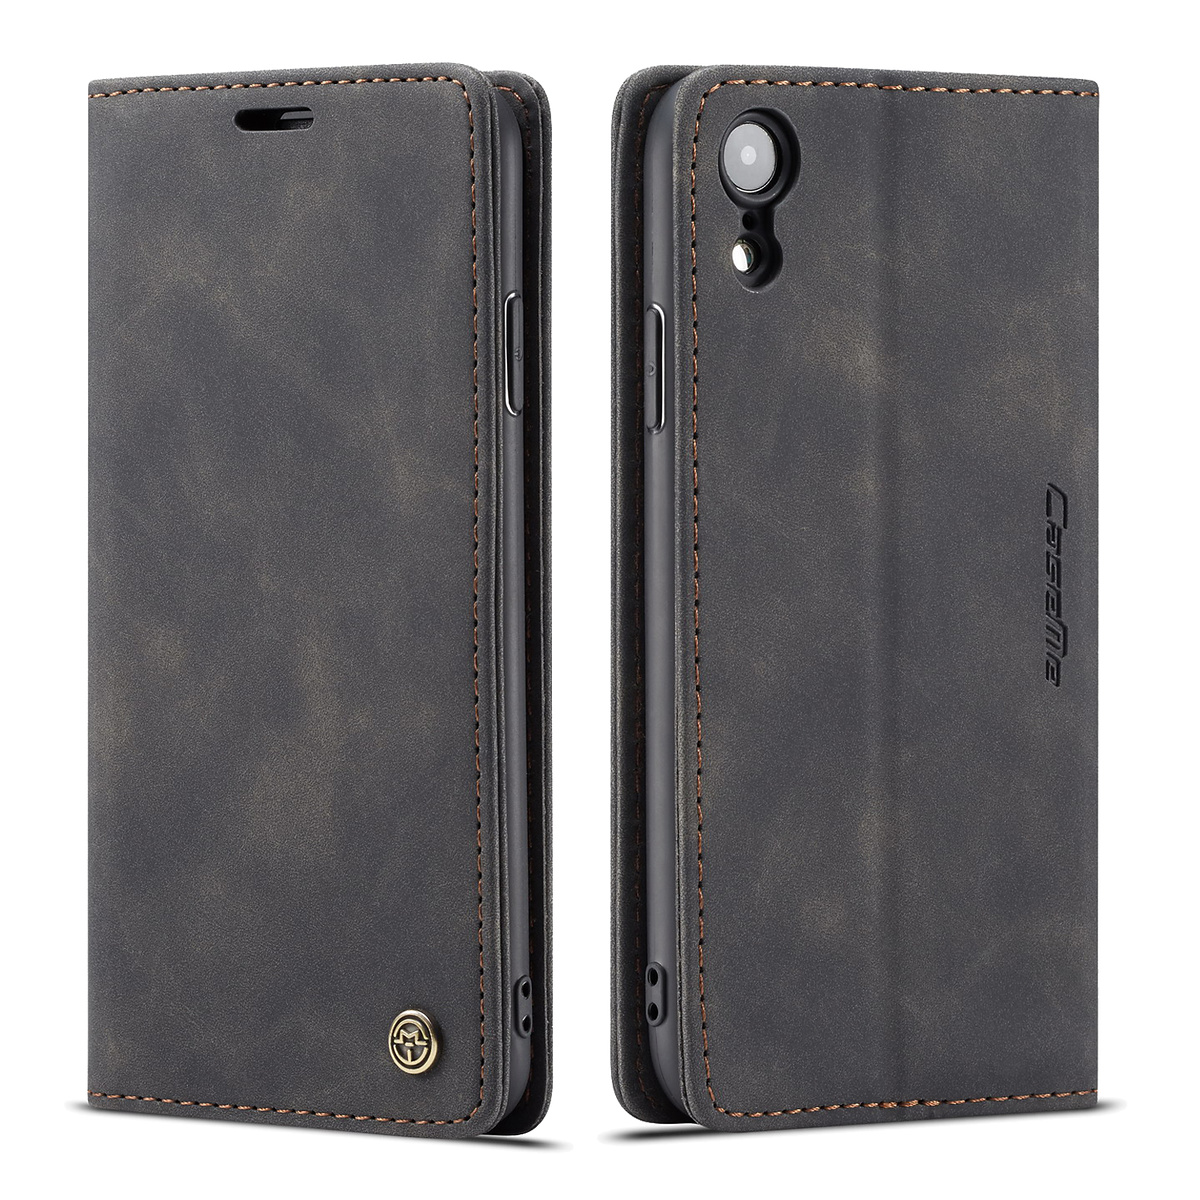 CaseMe plånboksfodral med ställ till iPhone XR, svart